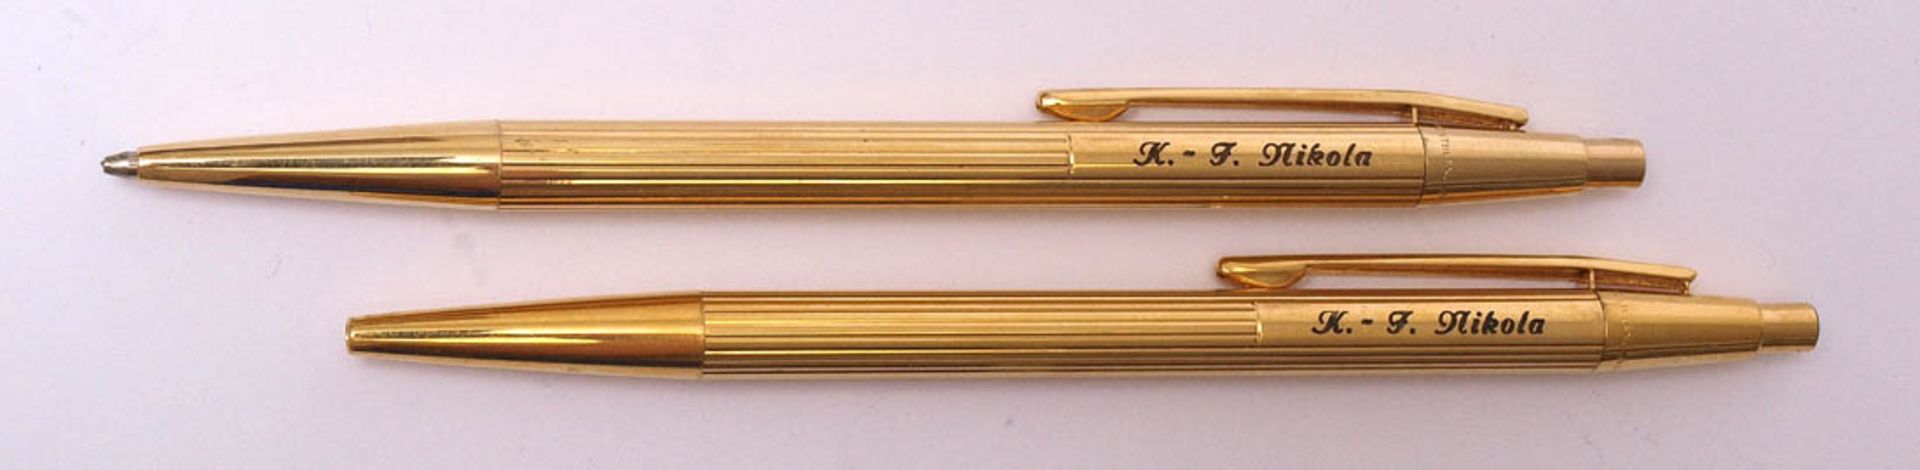 Schreibgarnitur, Montblanc NoblesseKugelschreiber und Bleistift. Metall, vergoldet. Seitliche